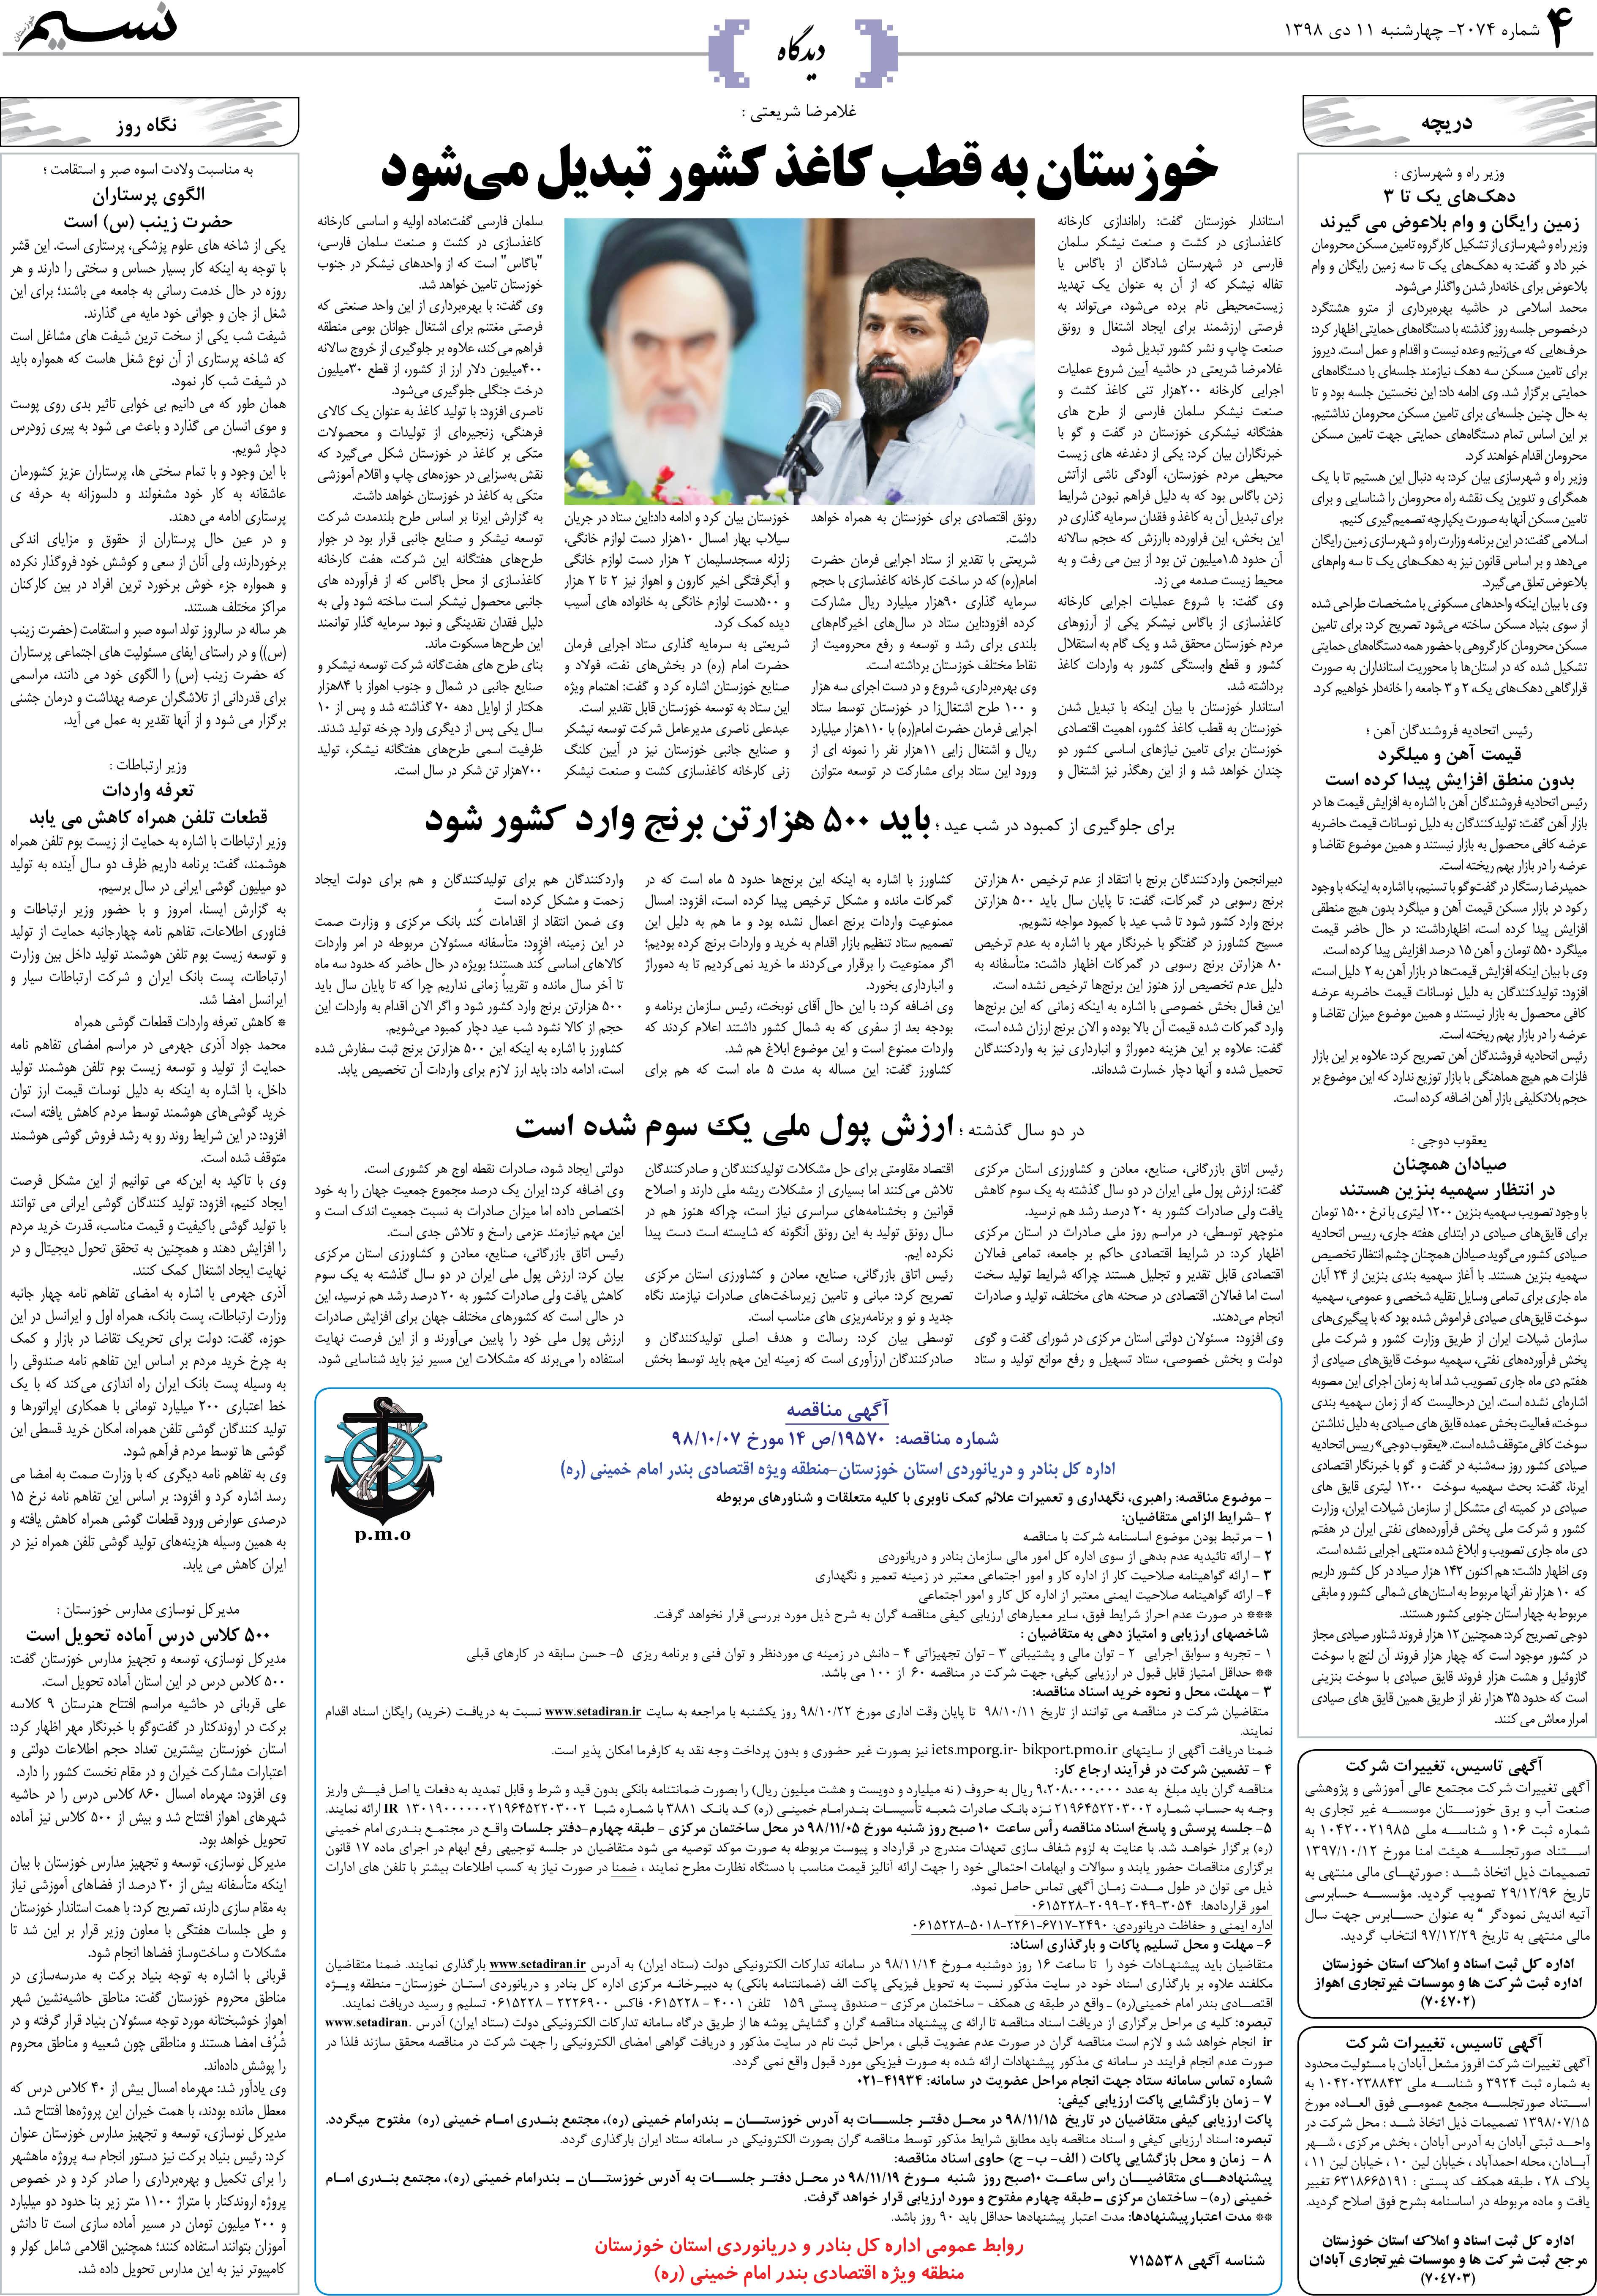 صفحه دیدگاه روزنامه نسیم شماره 2074